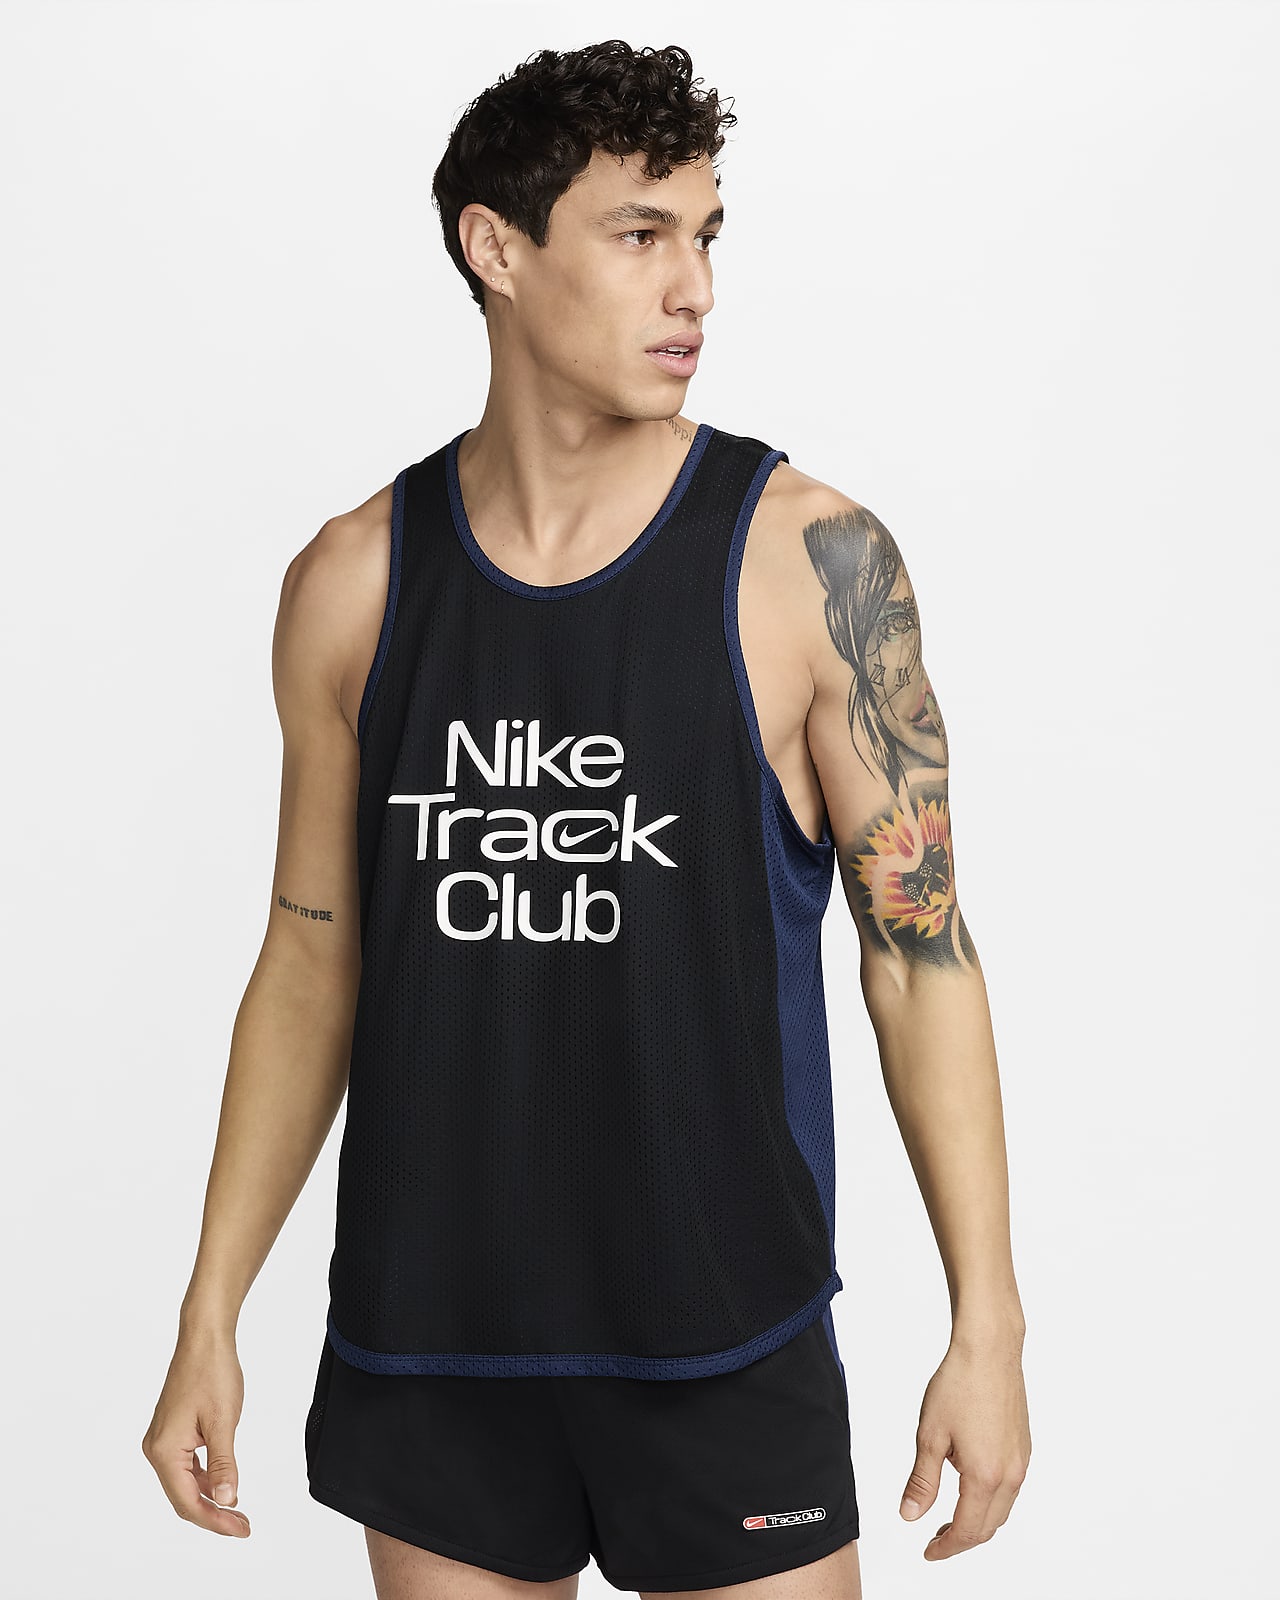 Nike Track Club hardloopsinglet met Dri-FIT voor heren